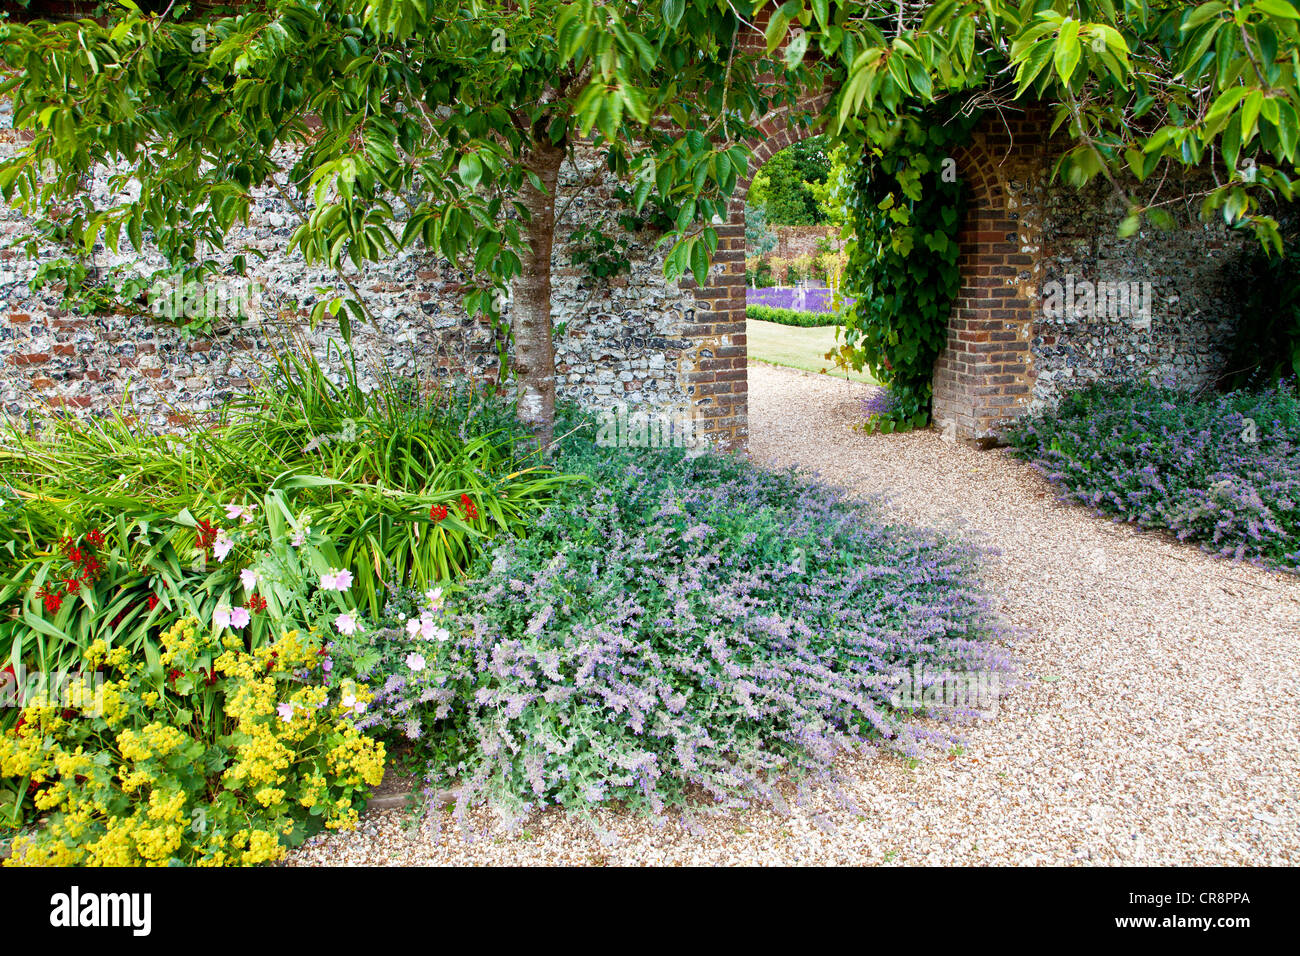 Katzenminze oder Nepeta grenzt einen Kiesweg führt durch einen Torbogen in eine Wand in einem englischen Landhaus-Garten. Stockfoto